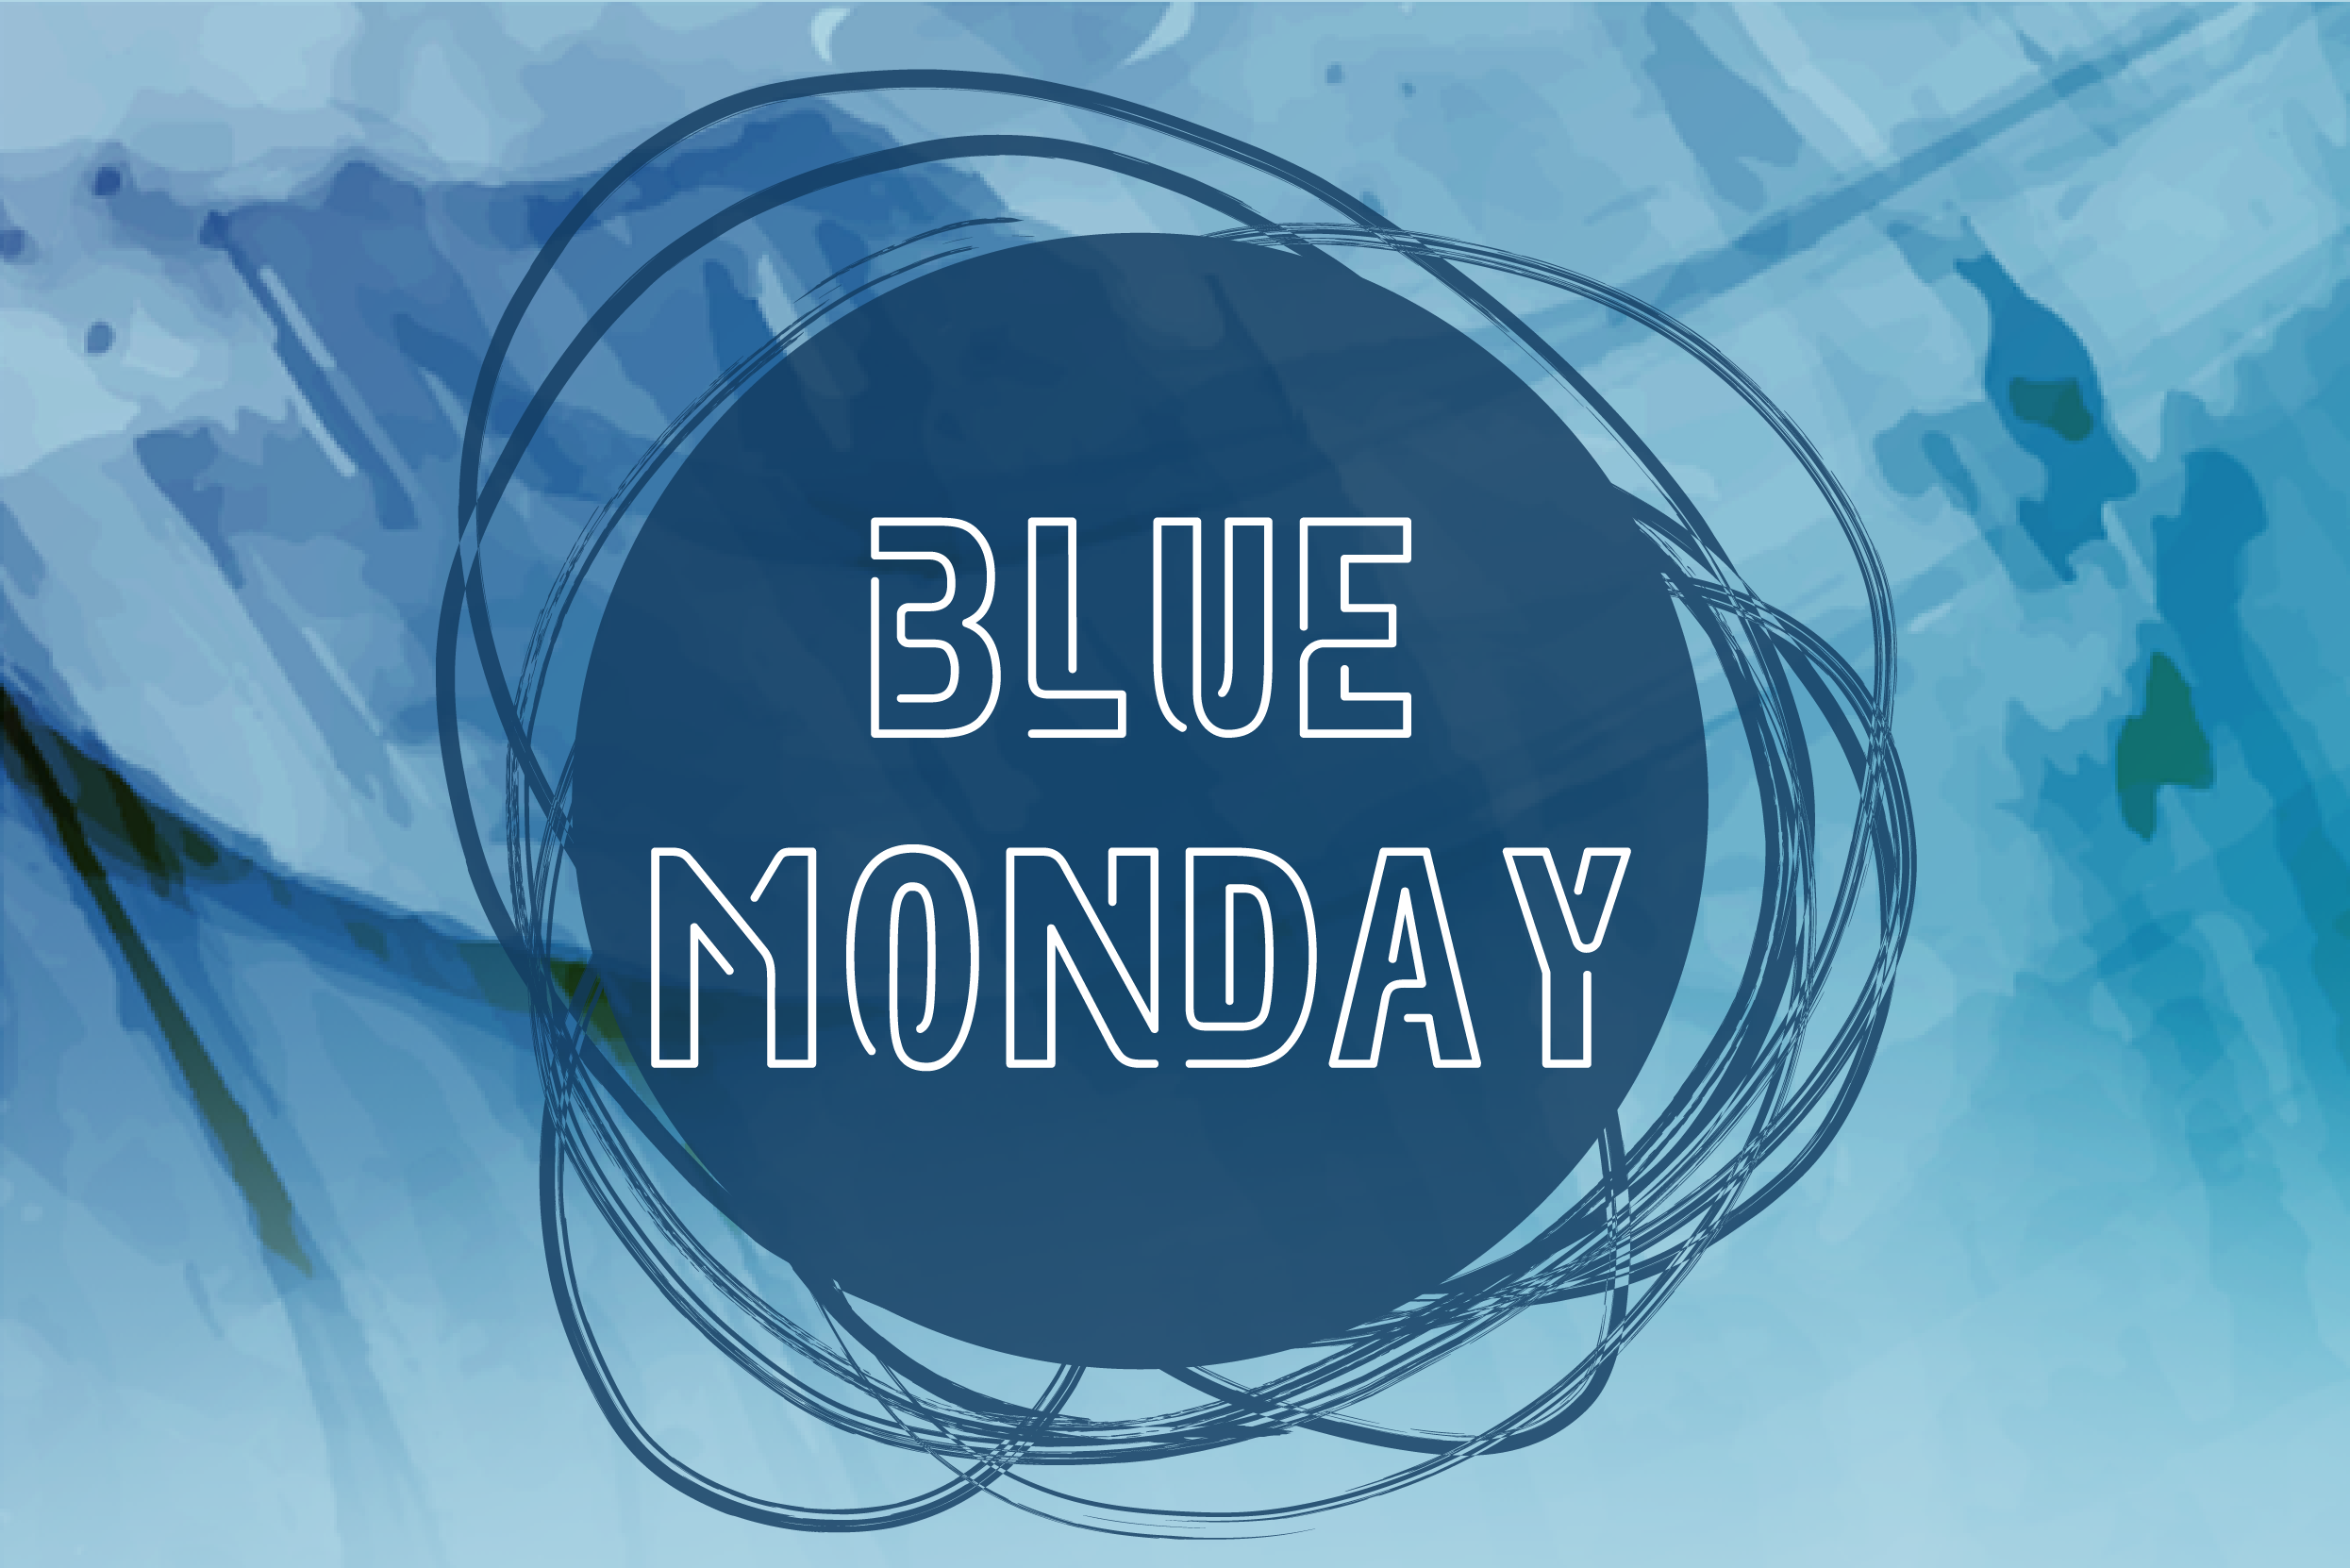 Our Blue Monday Flash Sale